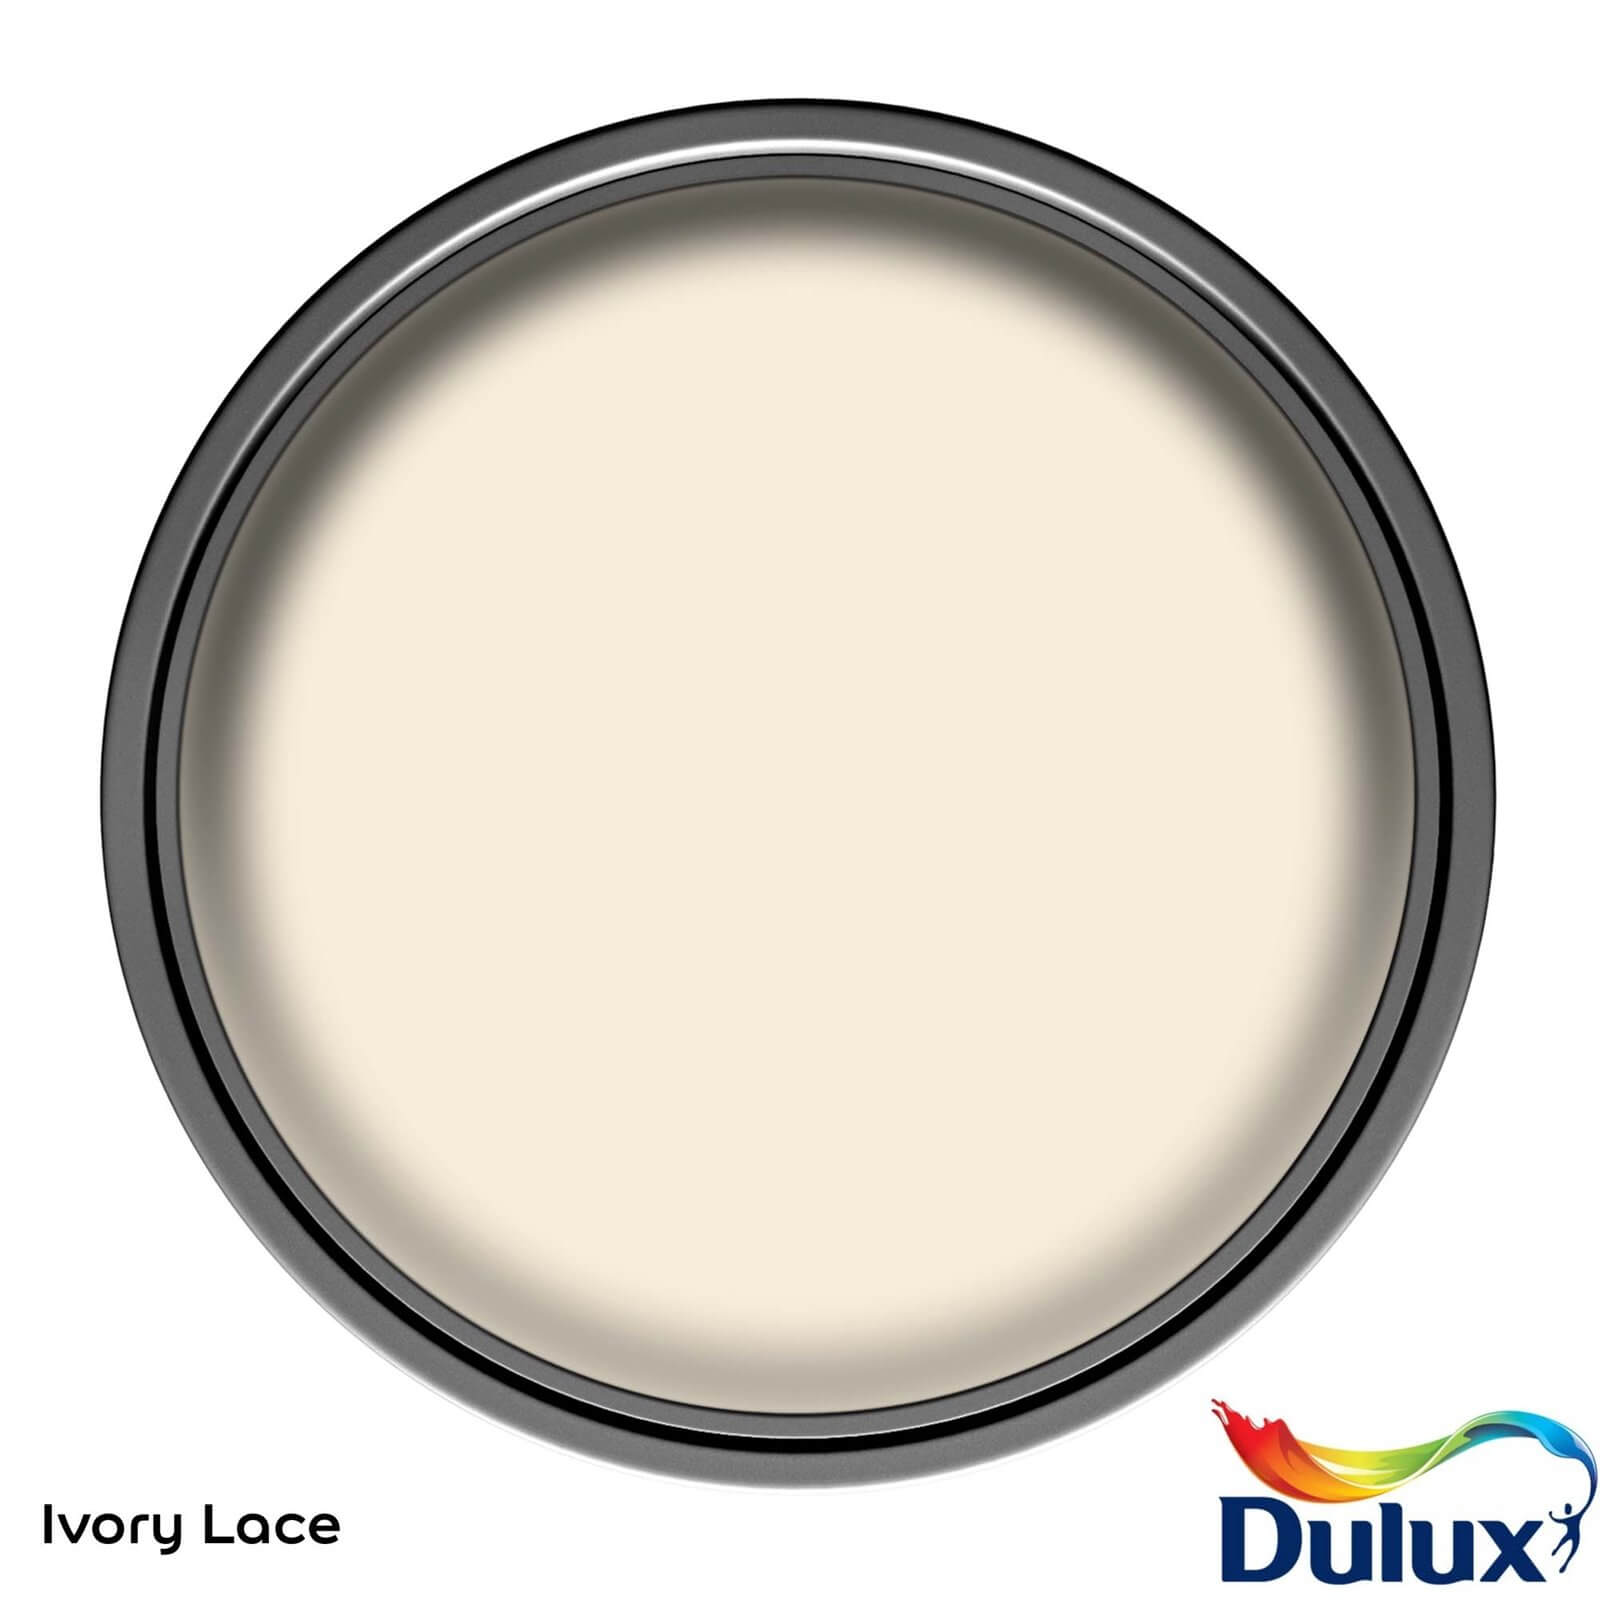 Dulux Easycare Washable & Tough Ivory Lace Matt Paint - 5L